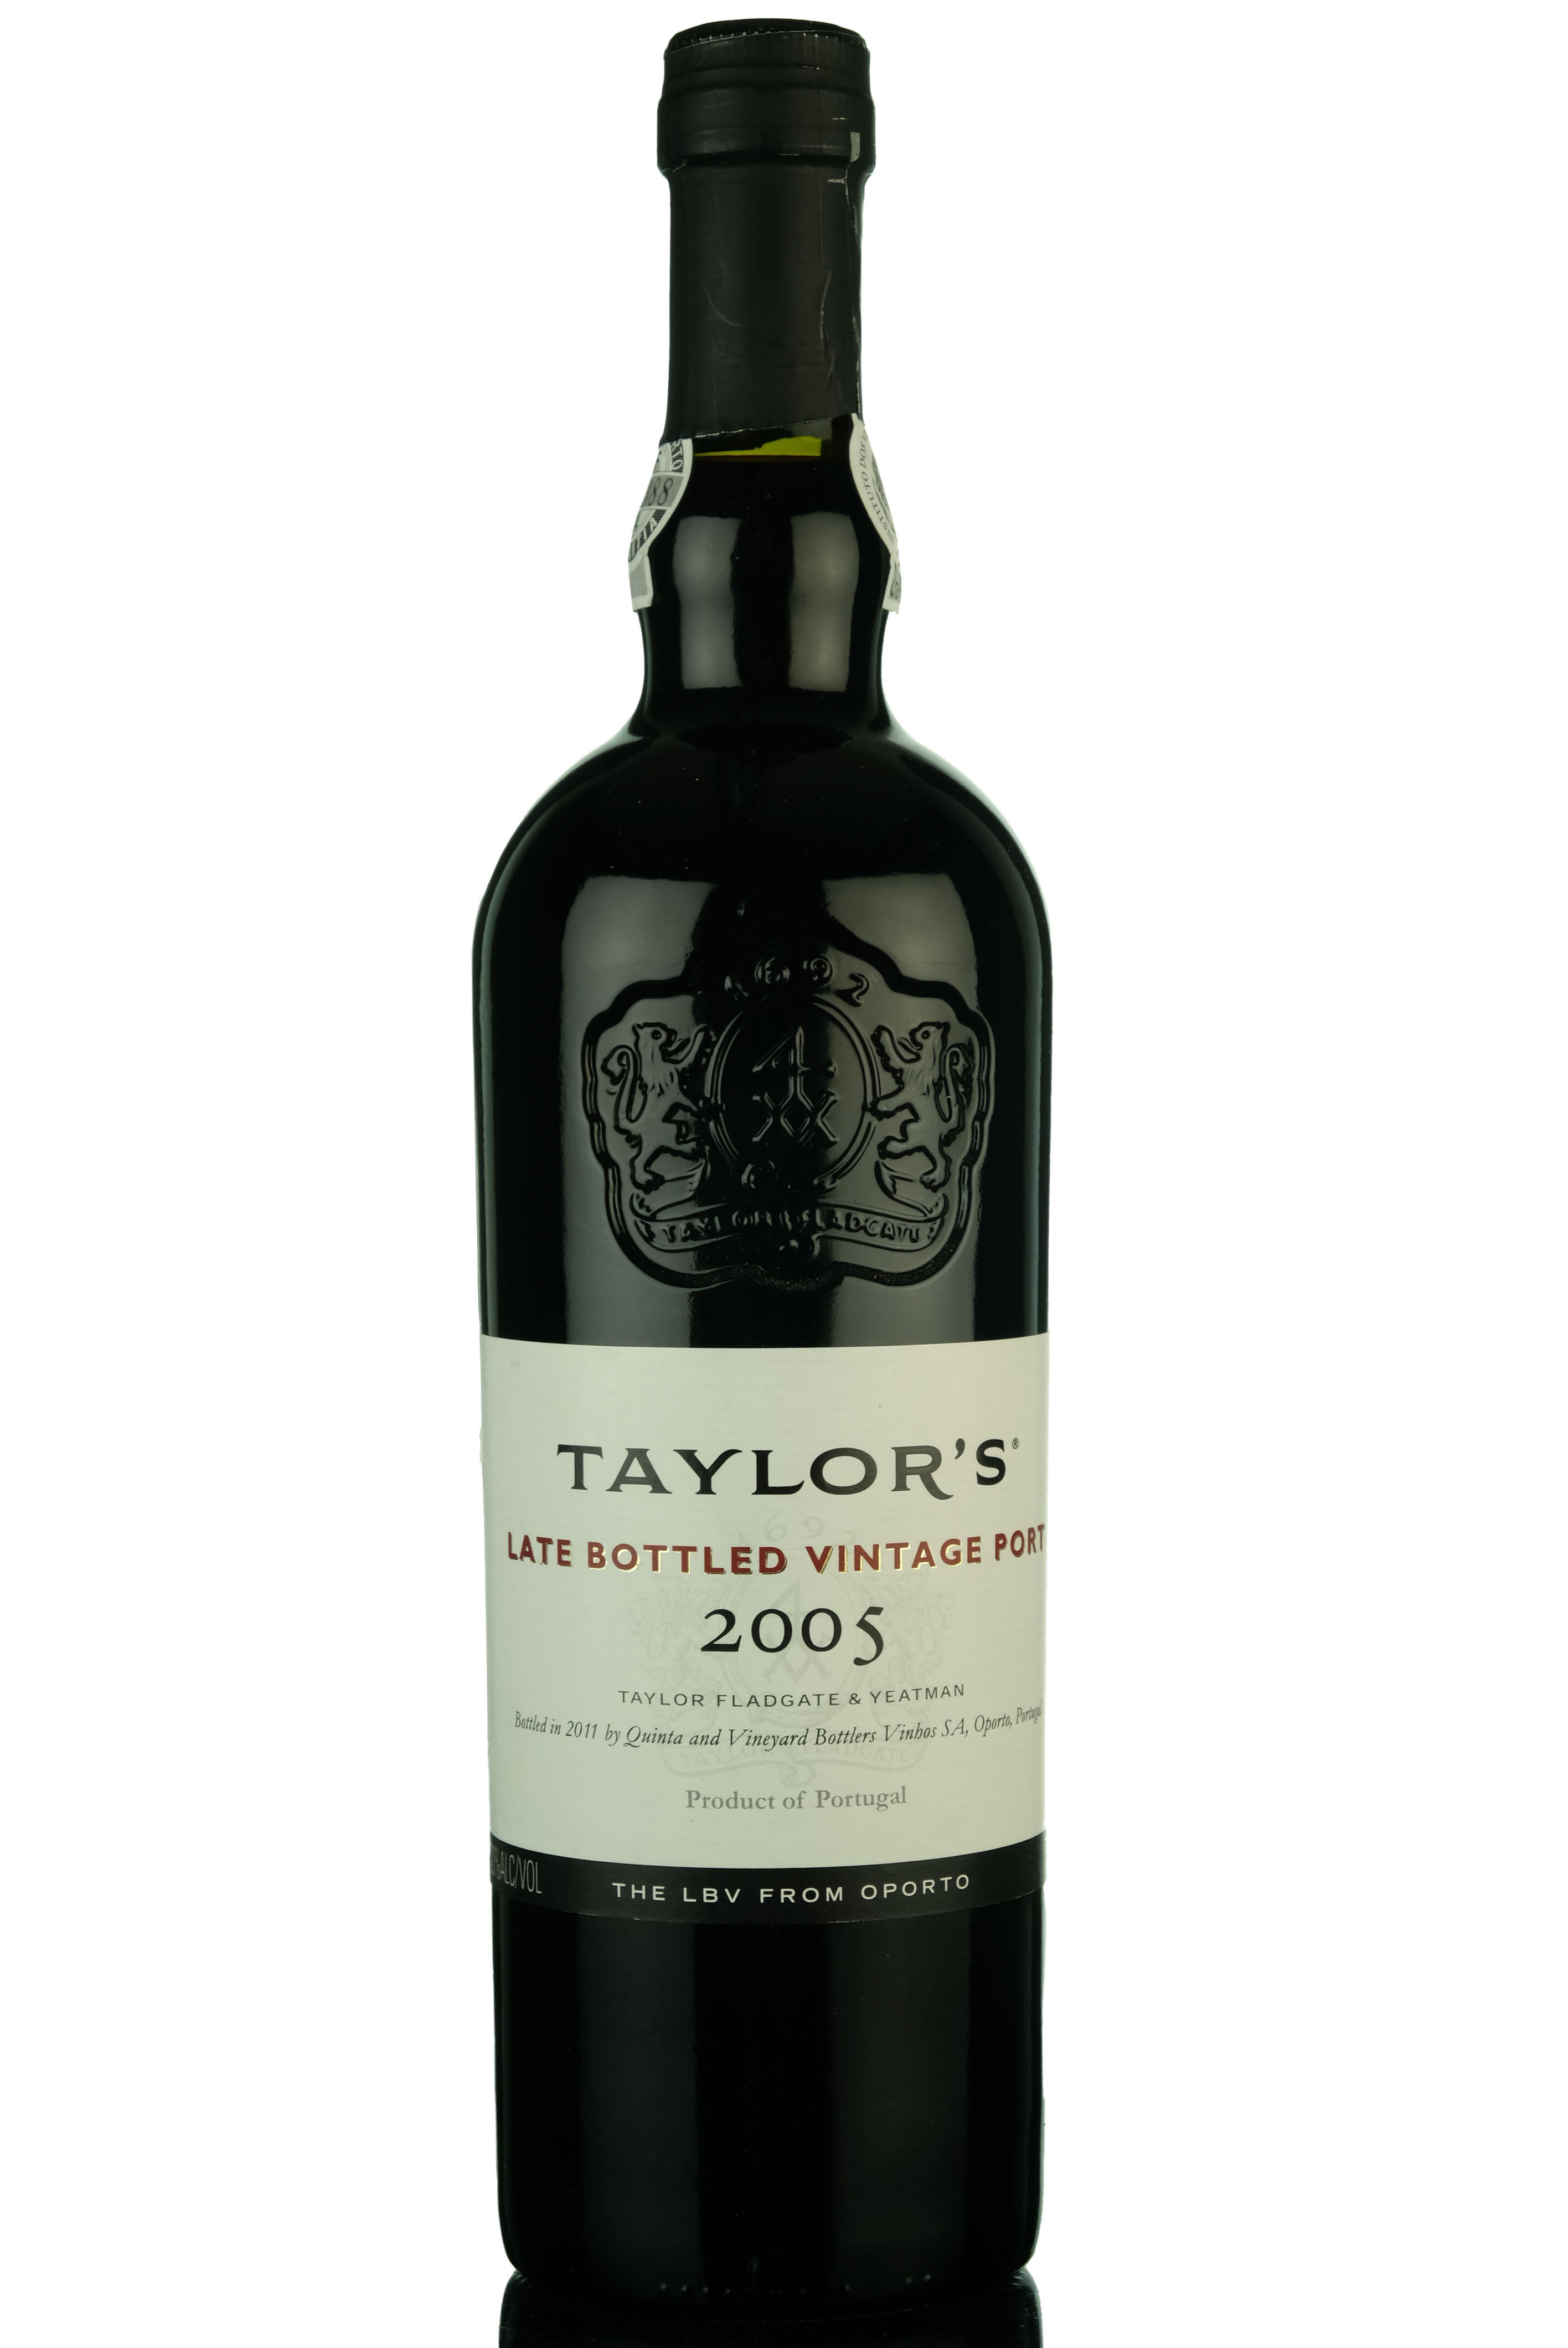 Taylors 2005 Vintage Port - Bottled 2011